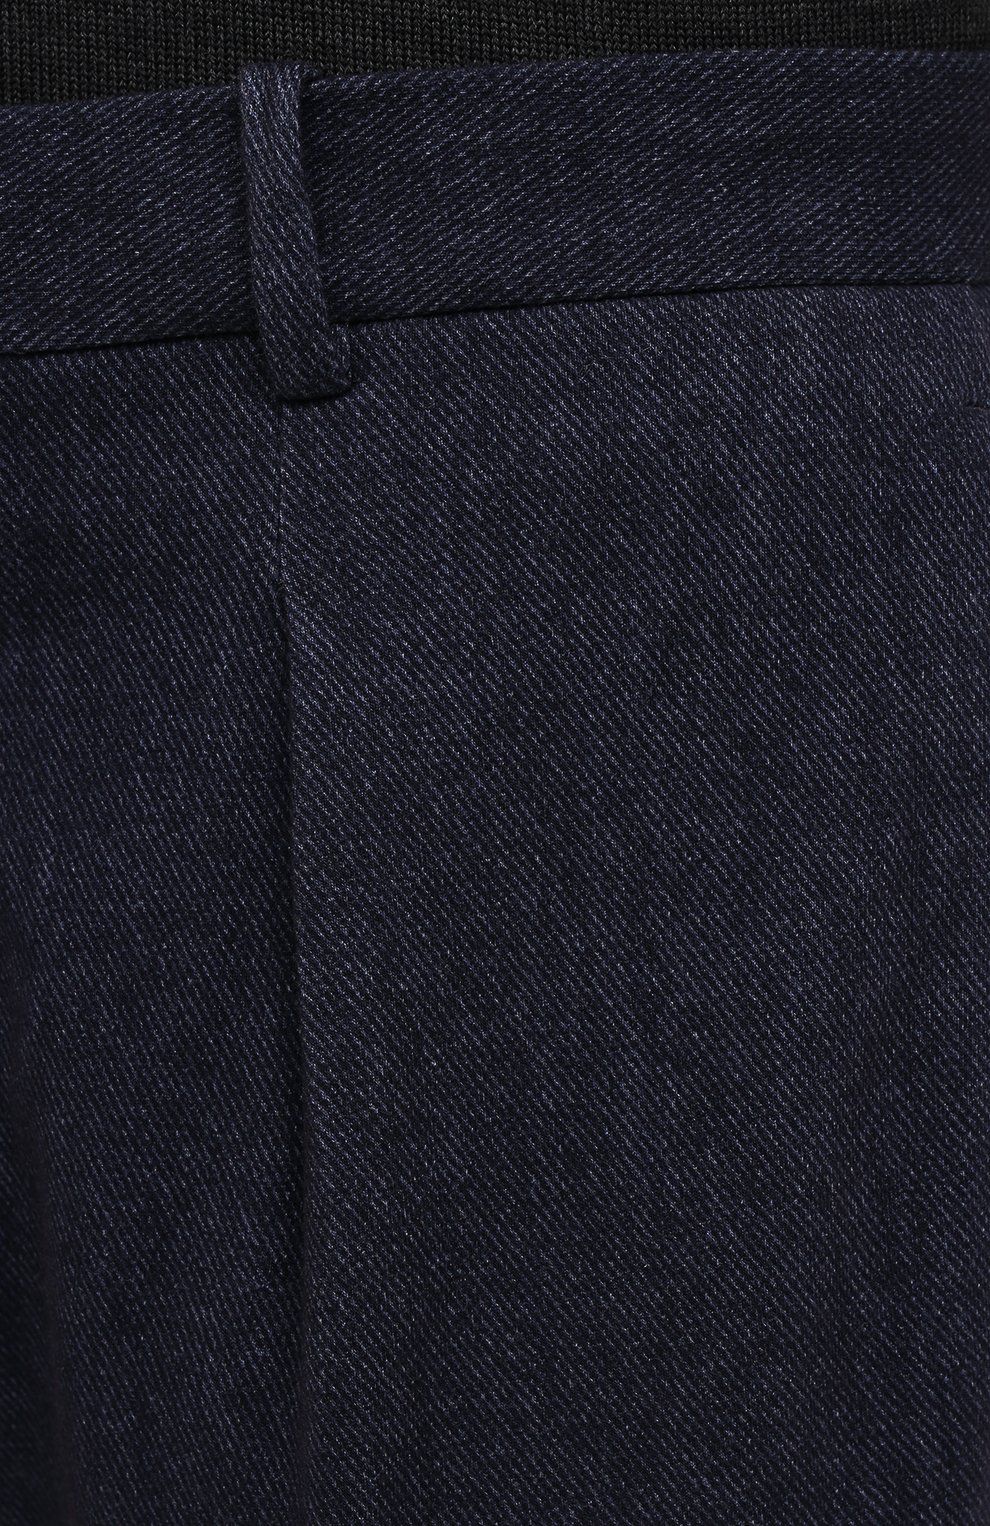 Мужские хлопковые брюки CIRCOLO 1901 темно-синего цвета, арт. CN3211 | Фото 5 (Длина (брюки, джинсы): Стандартные; Случай: Повседневный; Материал внешний: Хлопок; Стили: Кэжуэл)